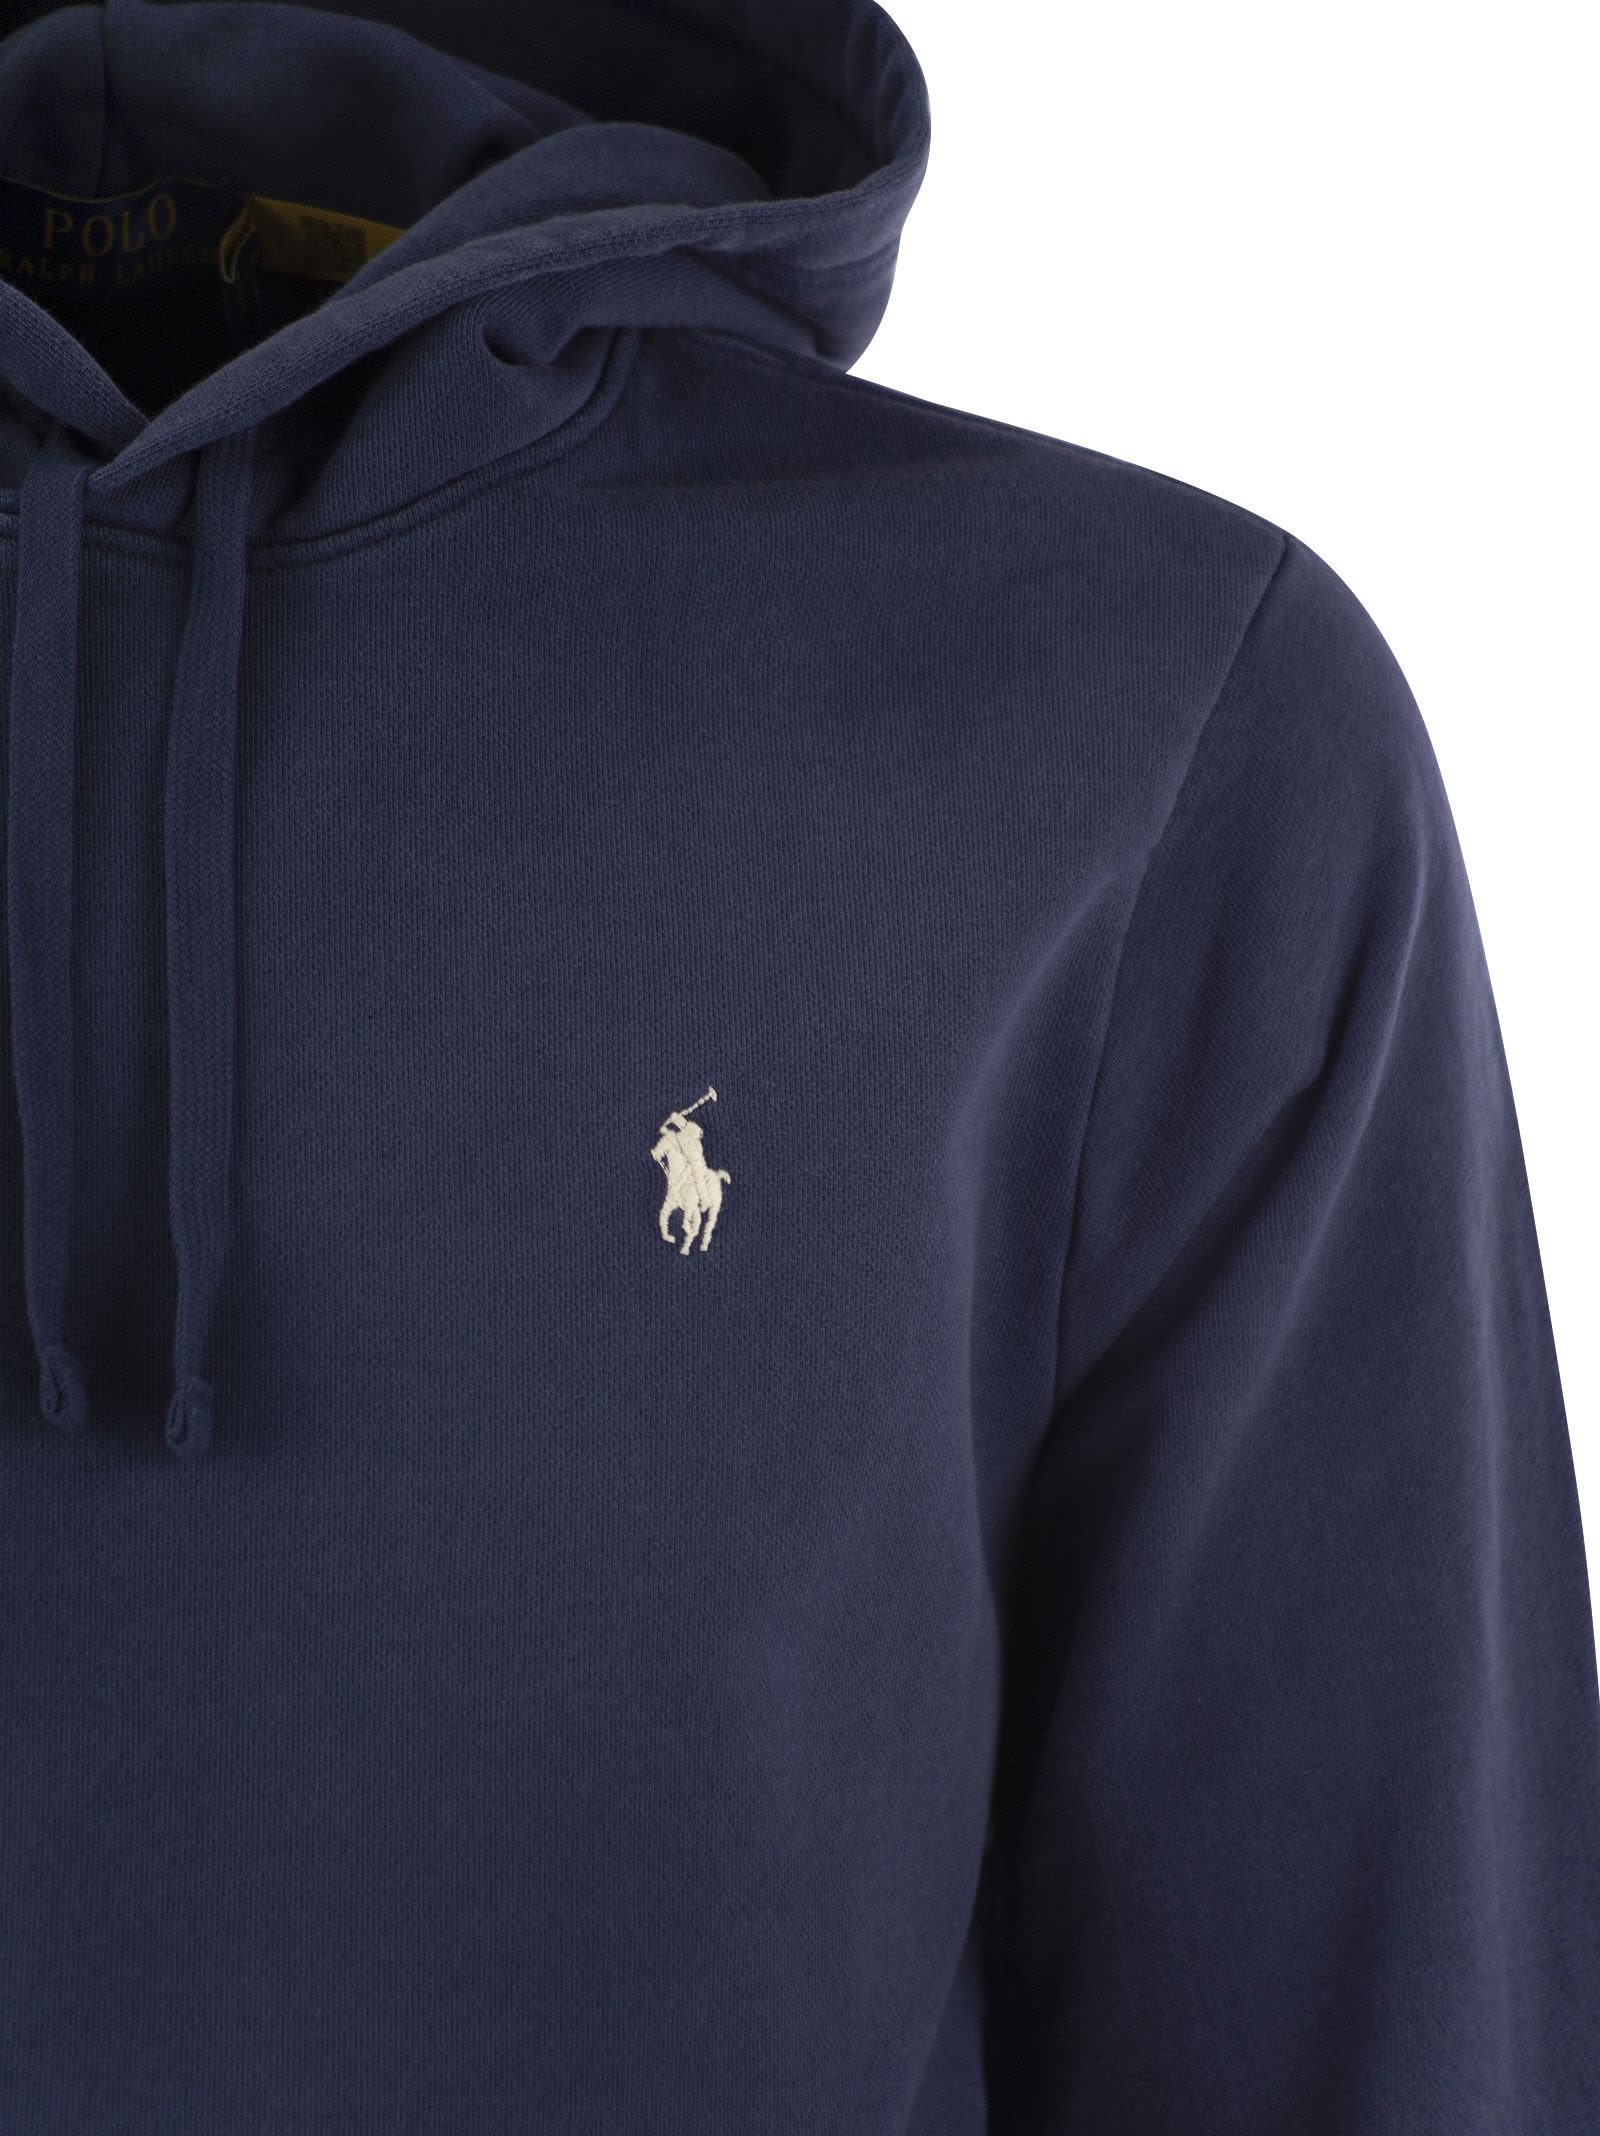 Shop Polo Ralph Lauren Hooded Sweatshirt Rl In Navy